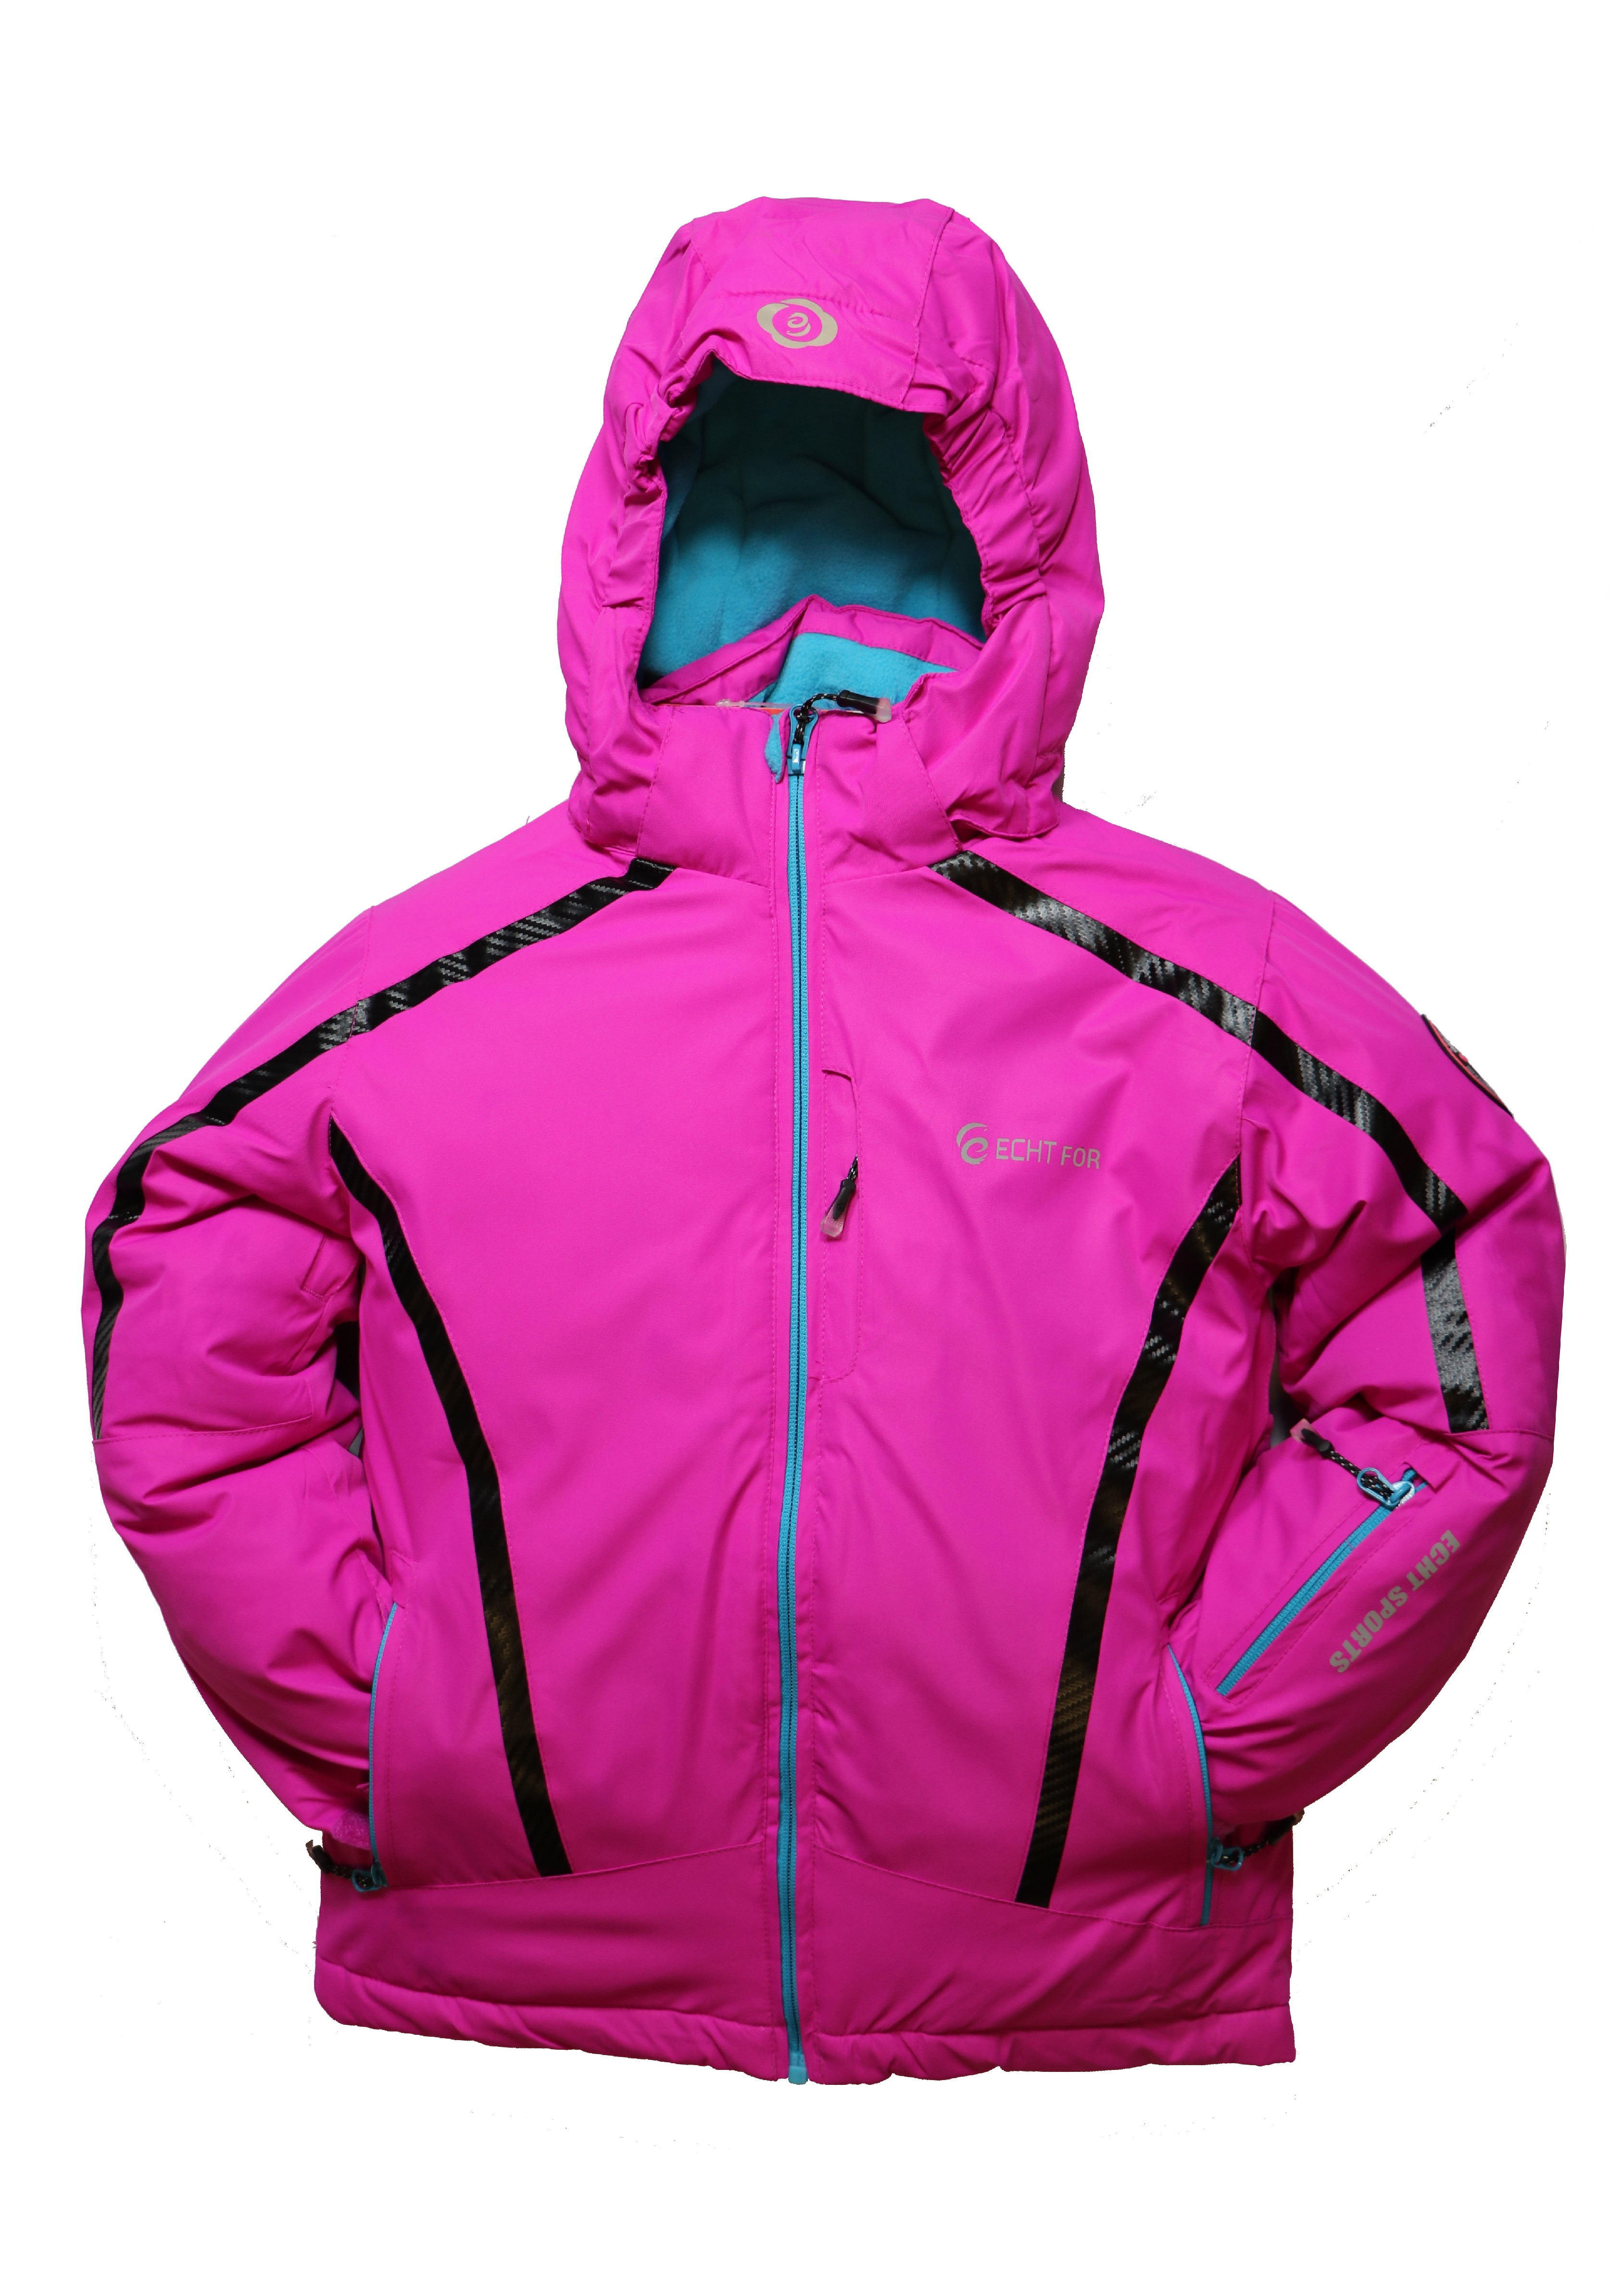 Dětská zimní bunda HA01-M1 fialová vel. 104-134 cm Barva: Fialová, Velikost: 128 - 134 cm